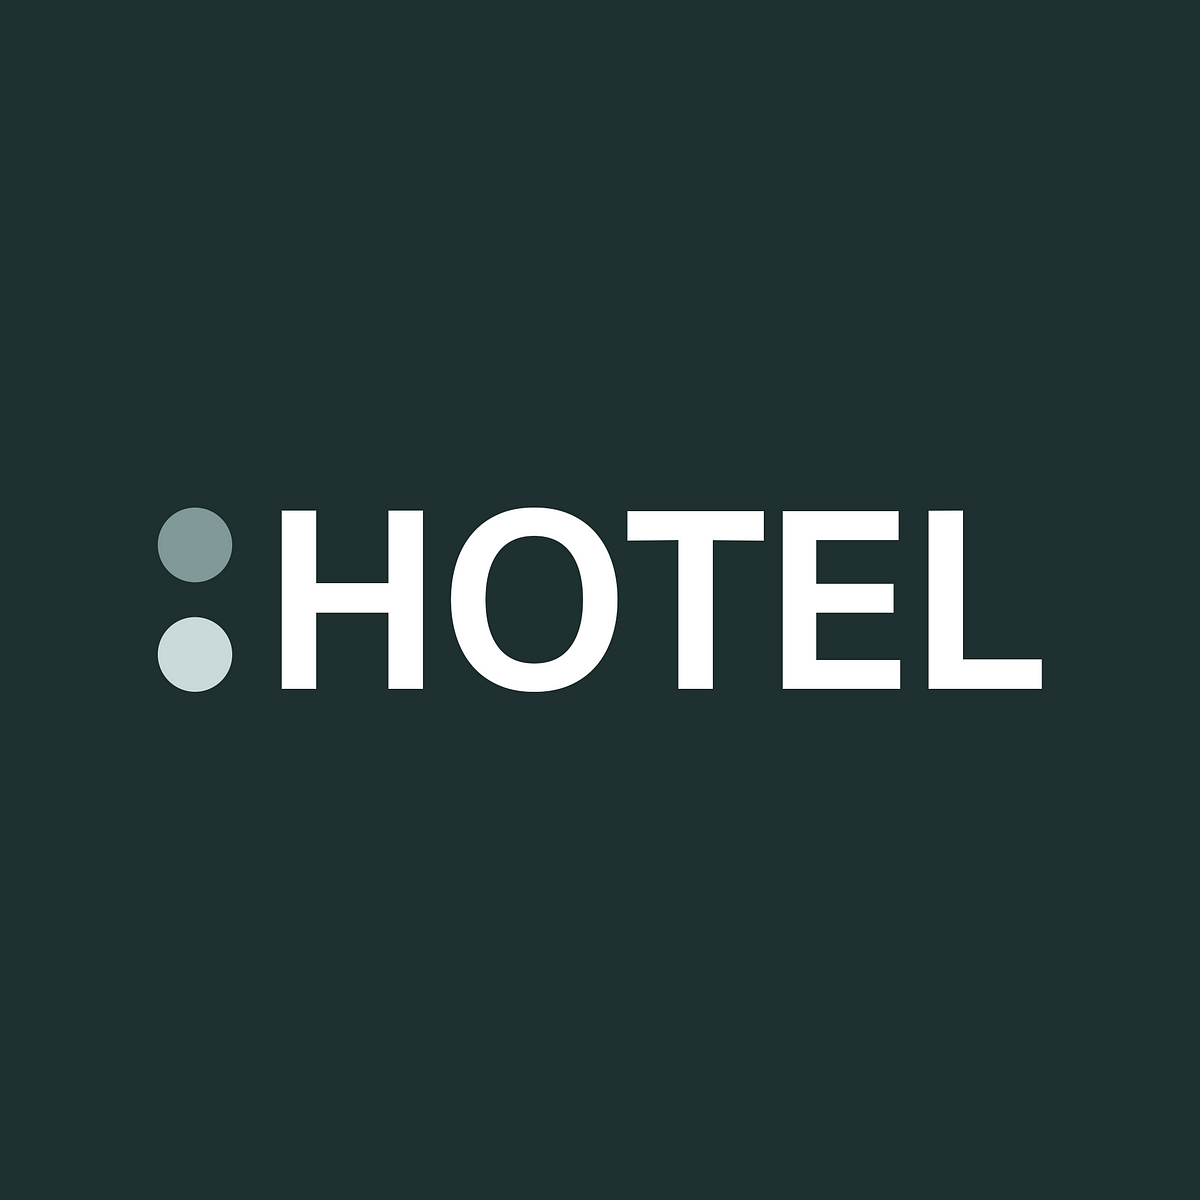 THE HOTEL - Medium